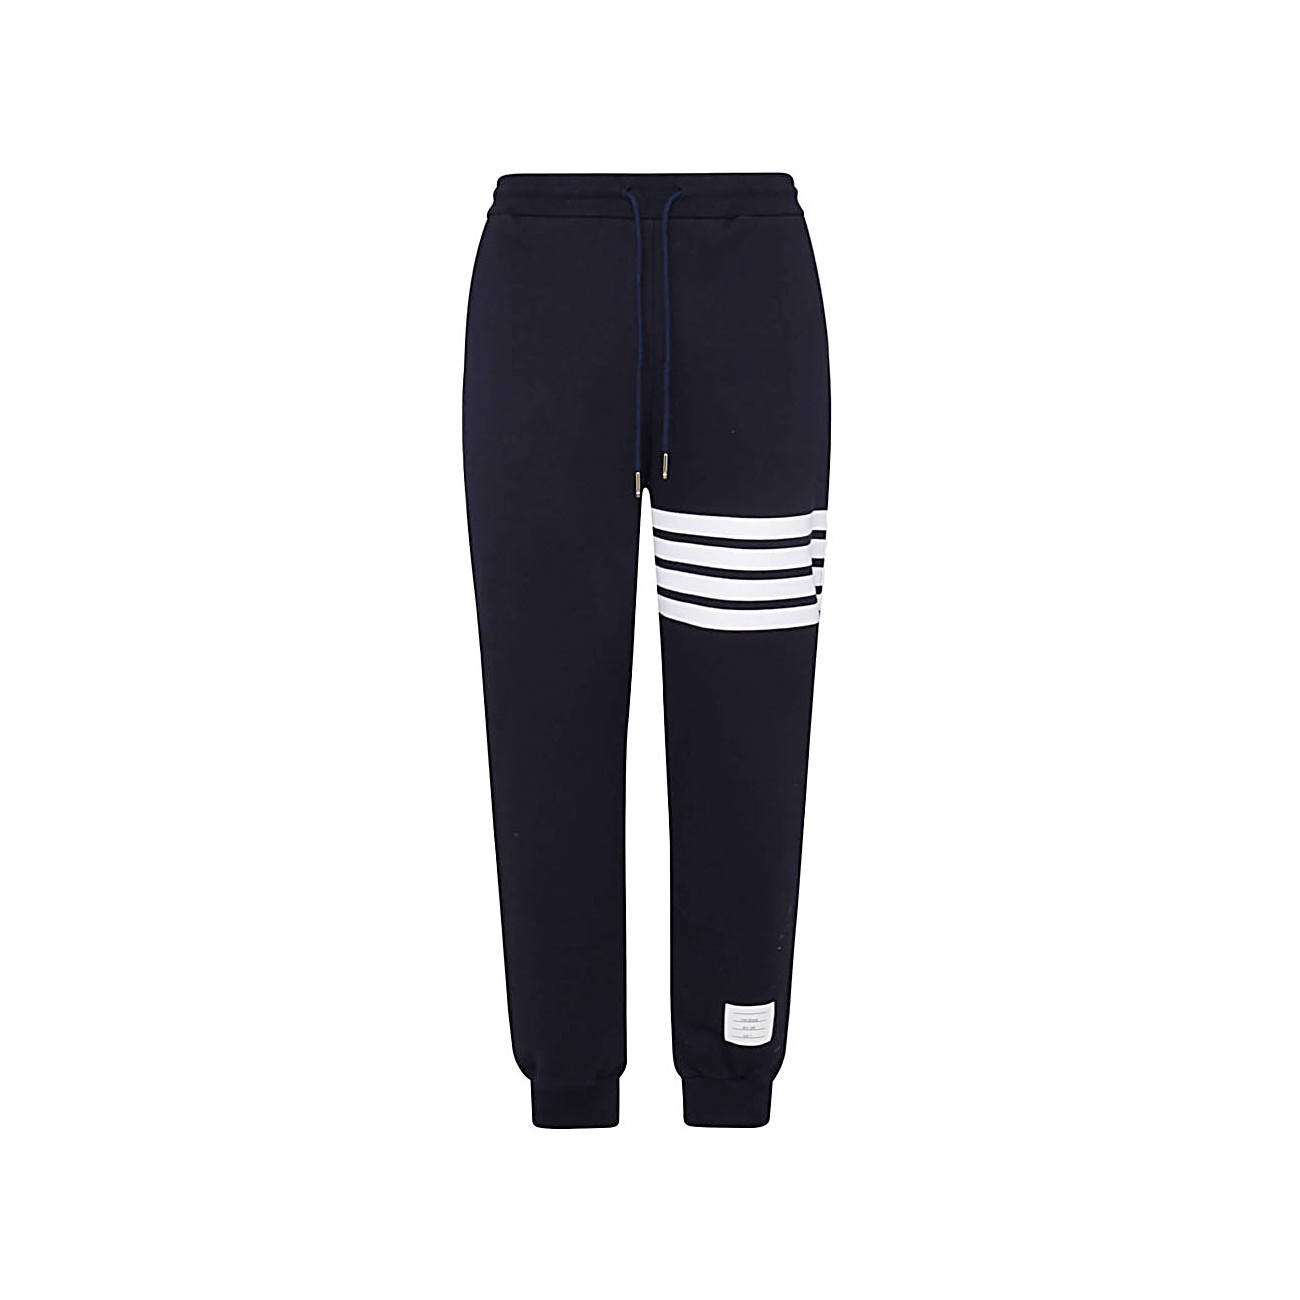 navy blue cotton pants - 1